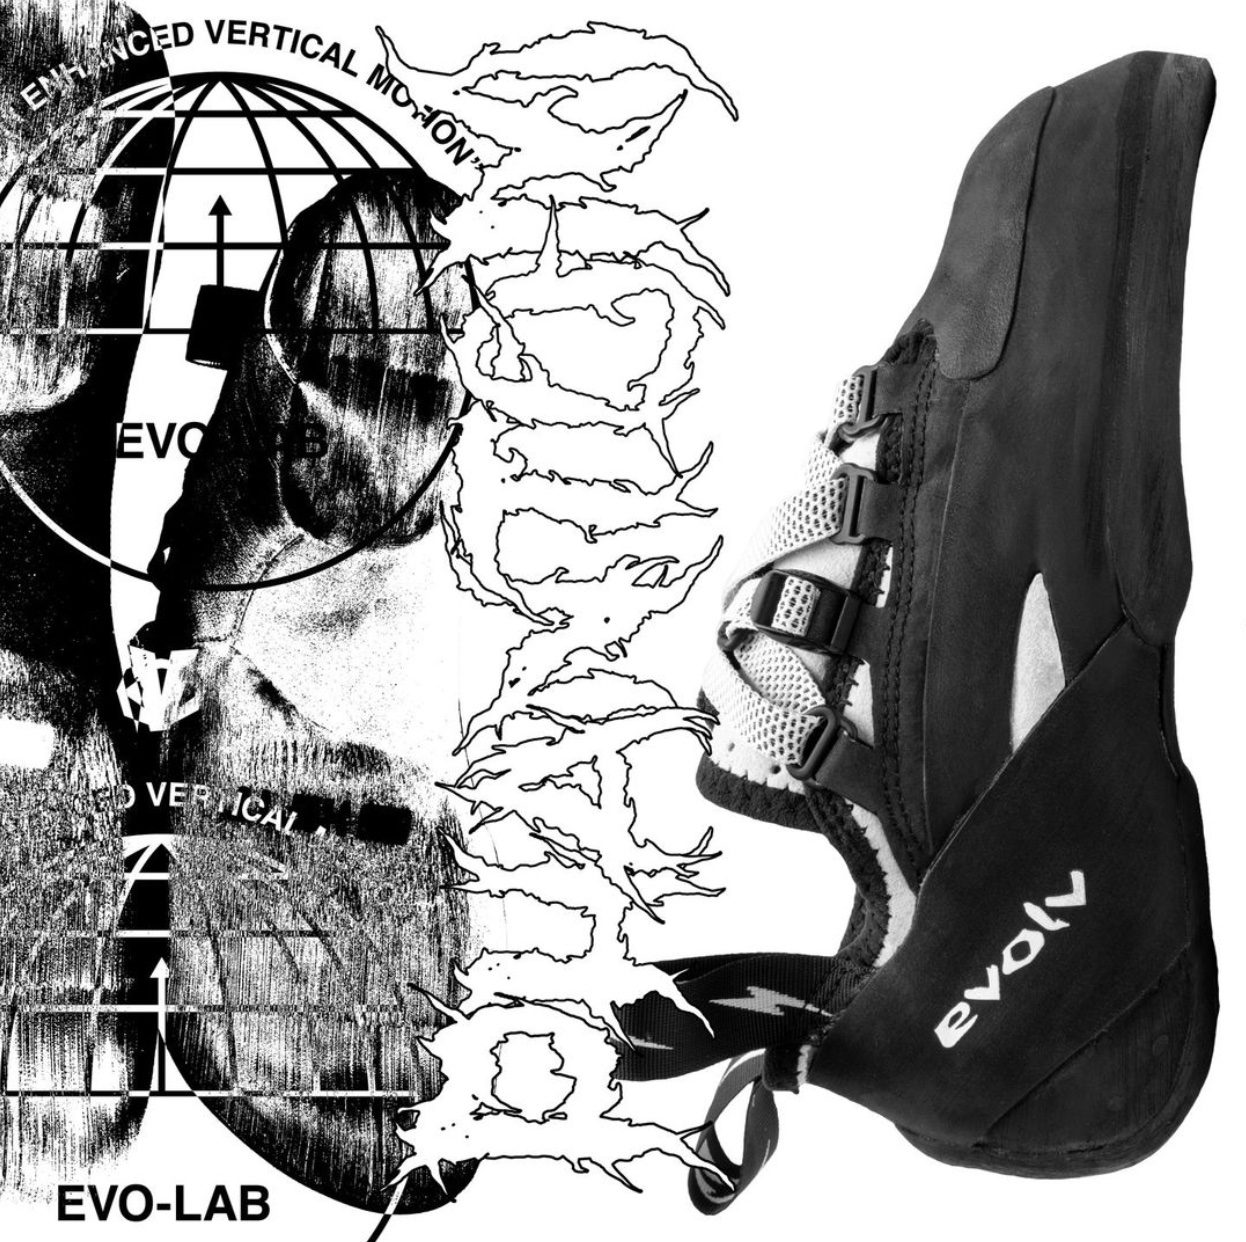  EVOLV Phantom LV Climbing Shoes - White/Black 6